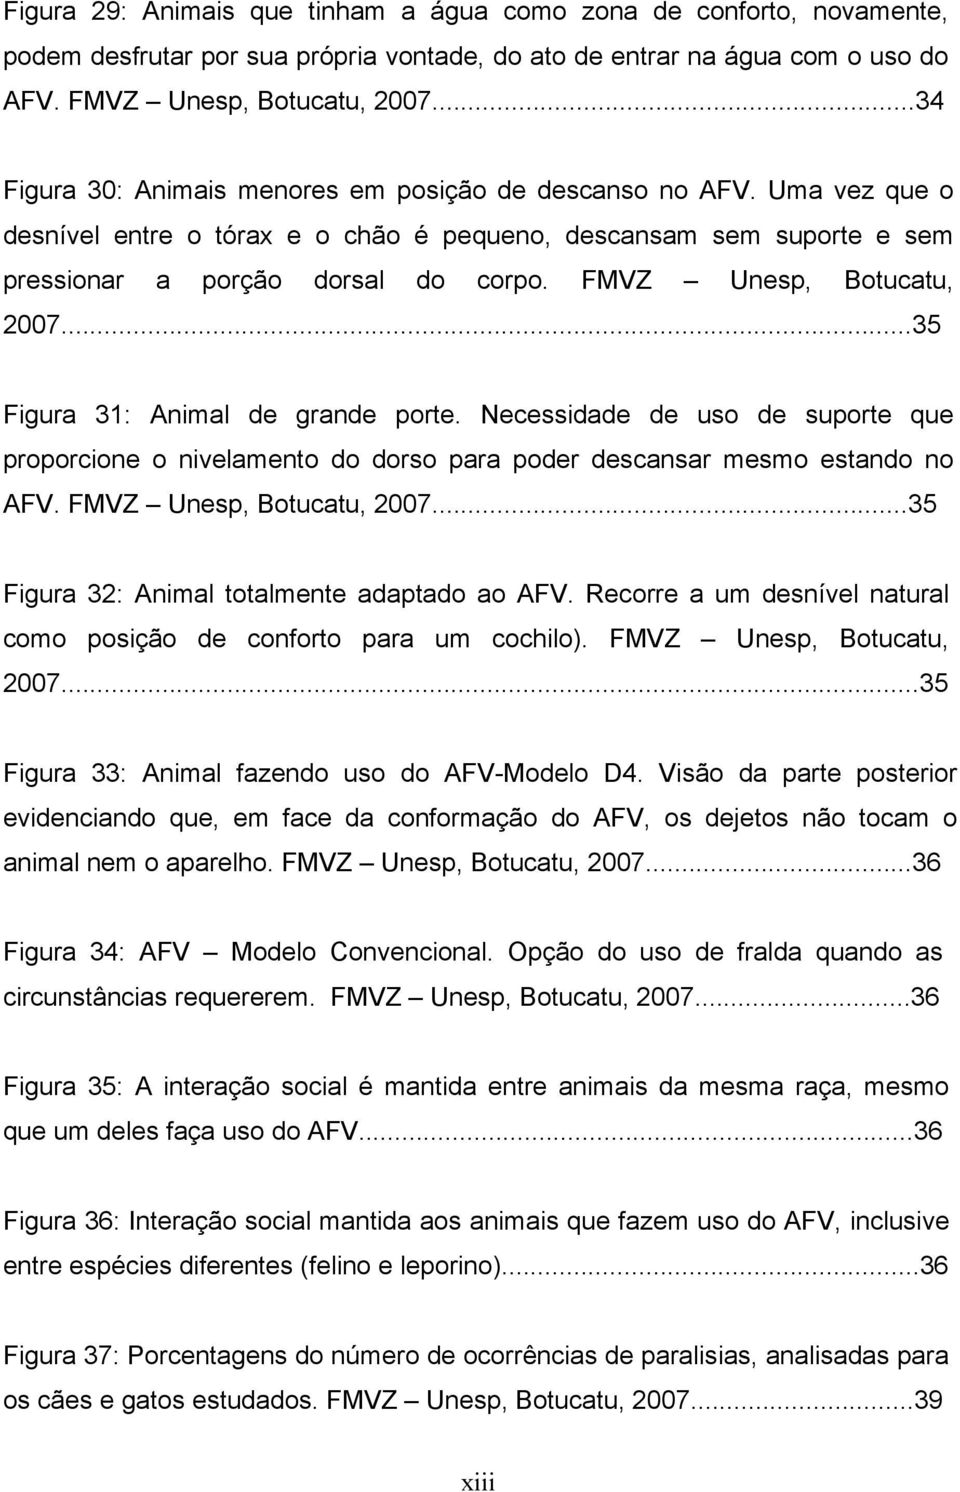 FMVZ Unesp, Botucatu, 2007...35 Figura 31: Animal de grande porte. Necessidade de uso de suporte que proporcione o nivelamento do dorso para poder descansar mesmo estando no AFV.